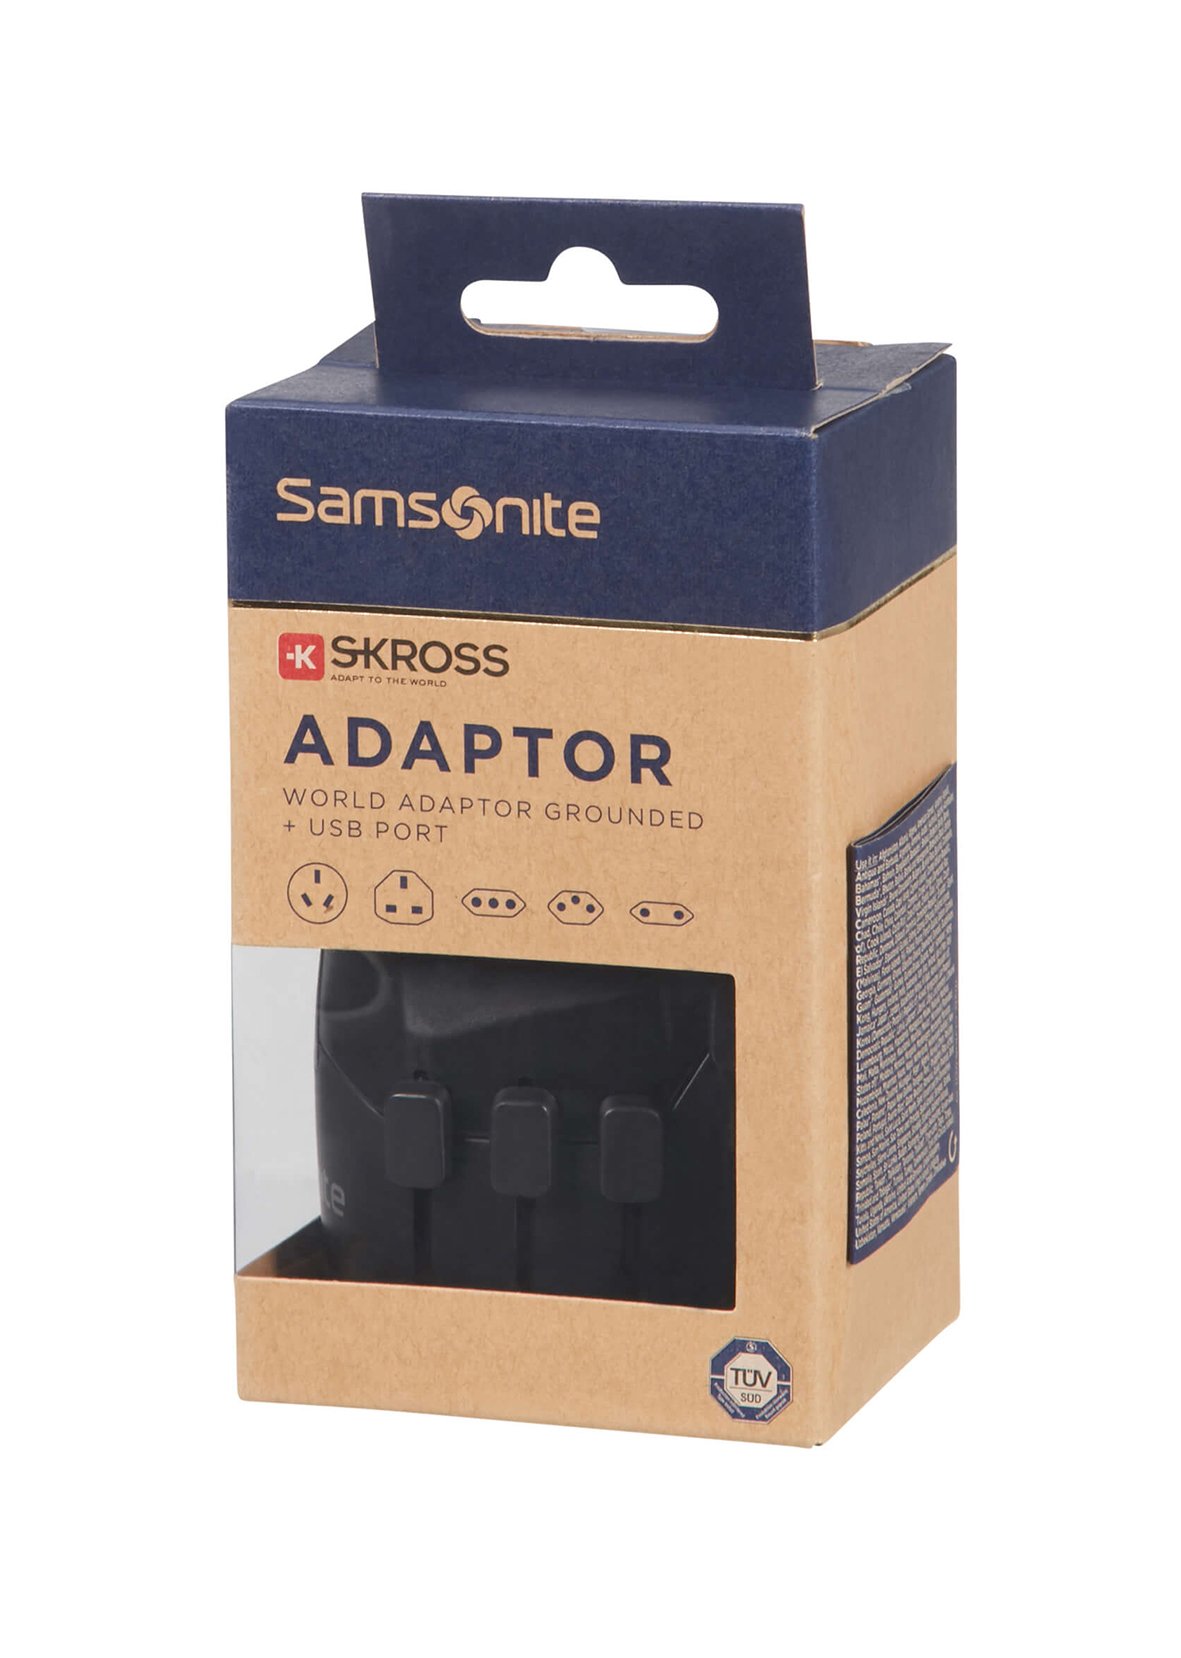 Reseadapter Samsonite Världsadapter + USB 37070042_2